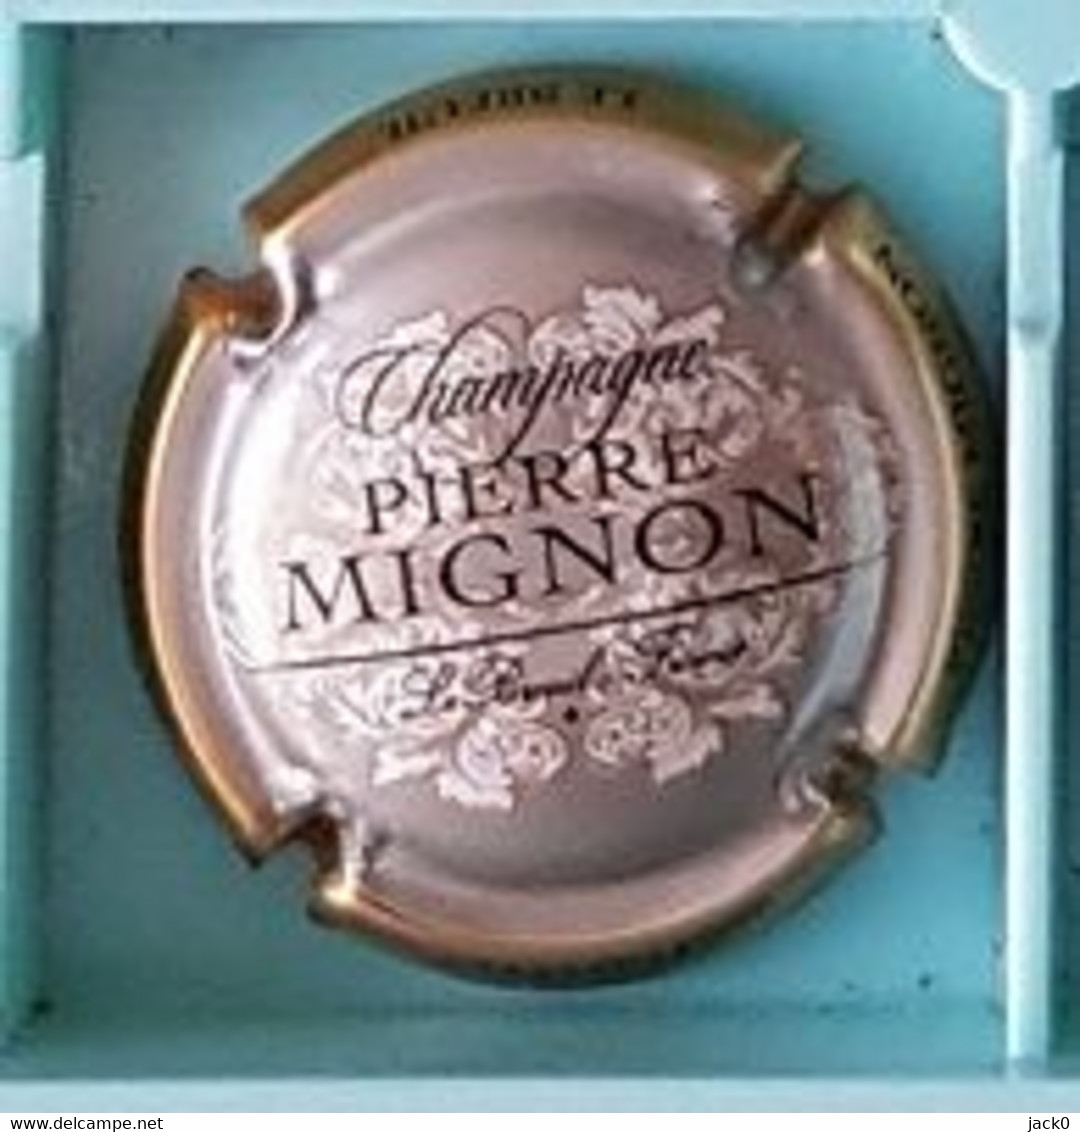 Boisson, Capsule De Champagne  Fond  Argent  Contour  Or  PIERRE  MIGNON - Mignon, Pierre